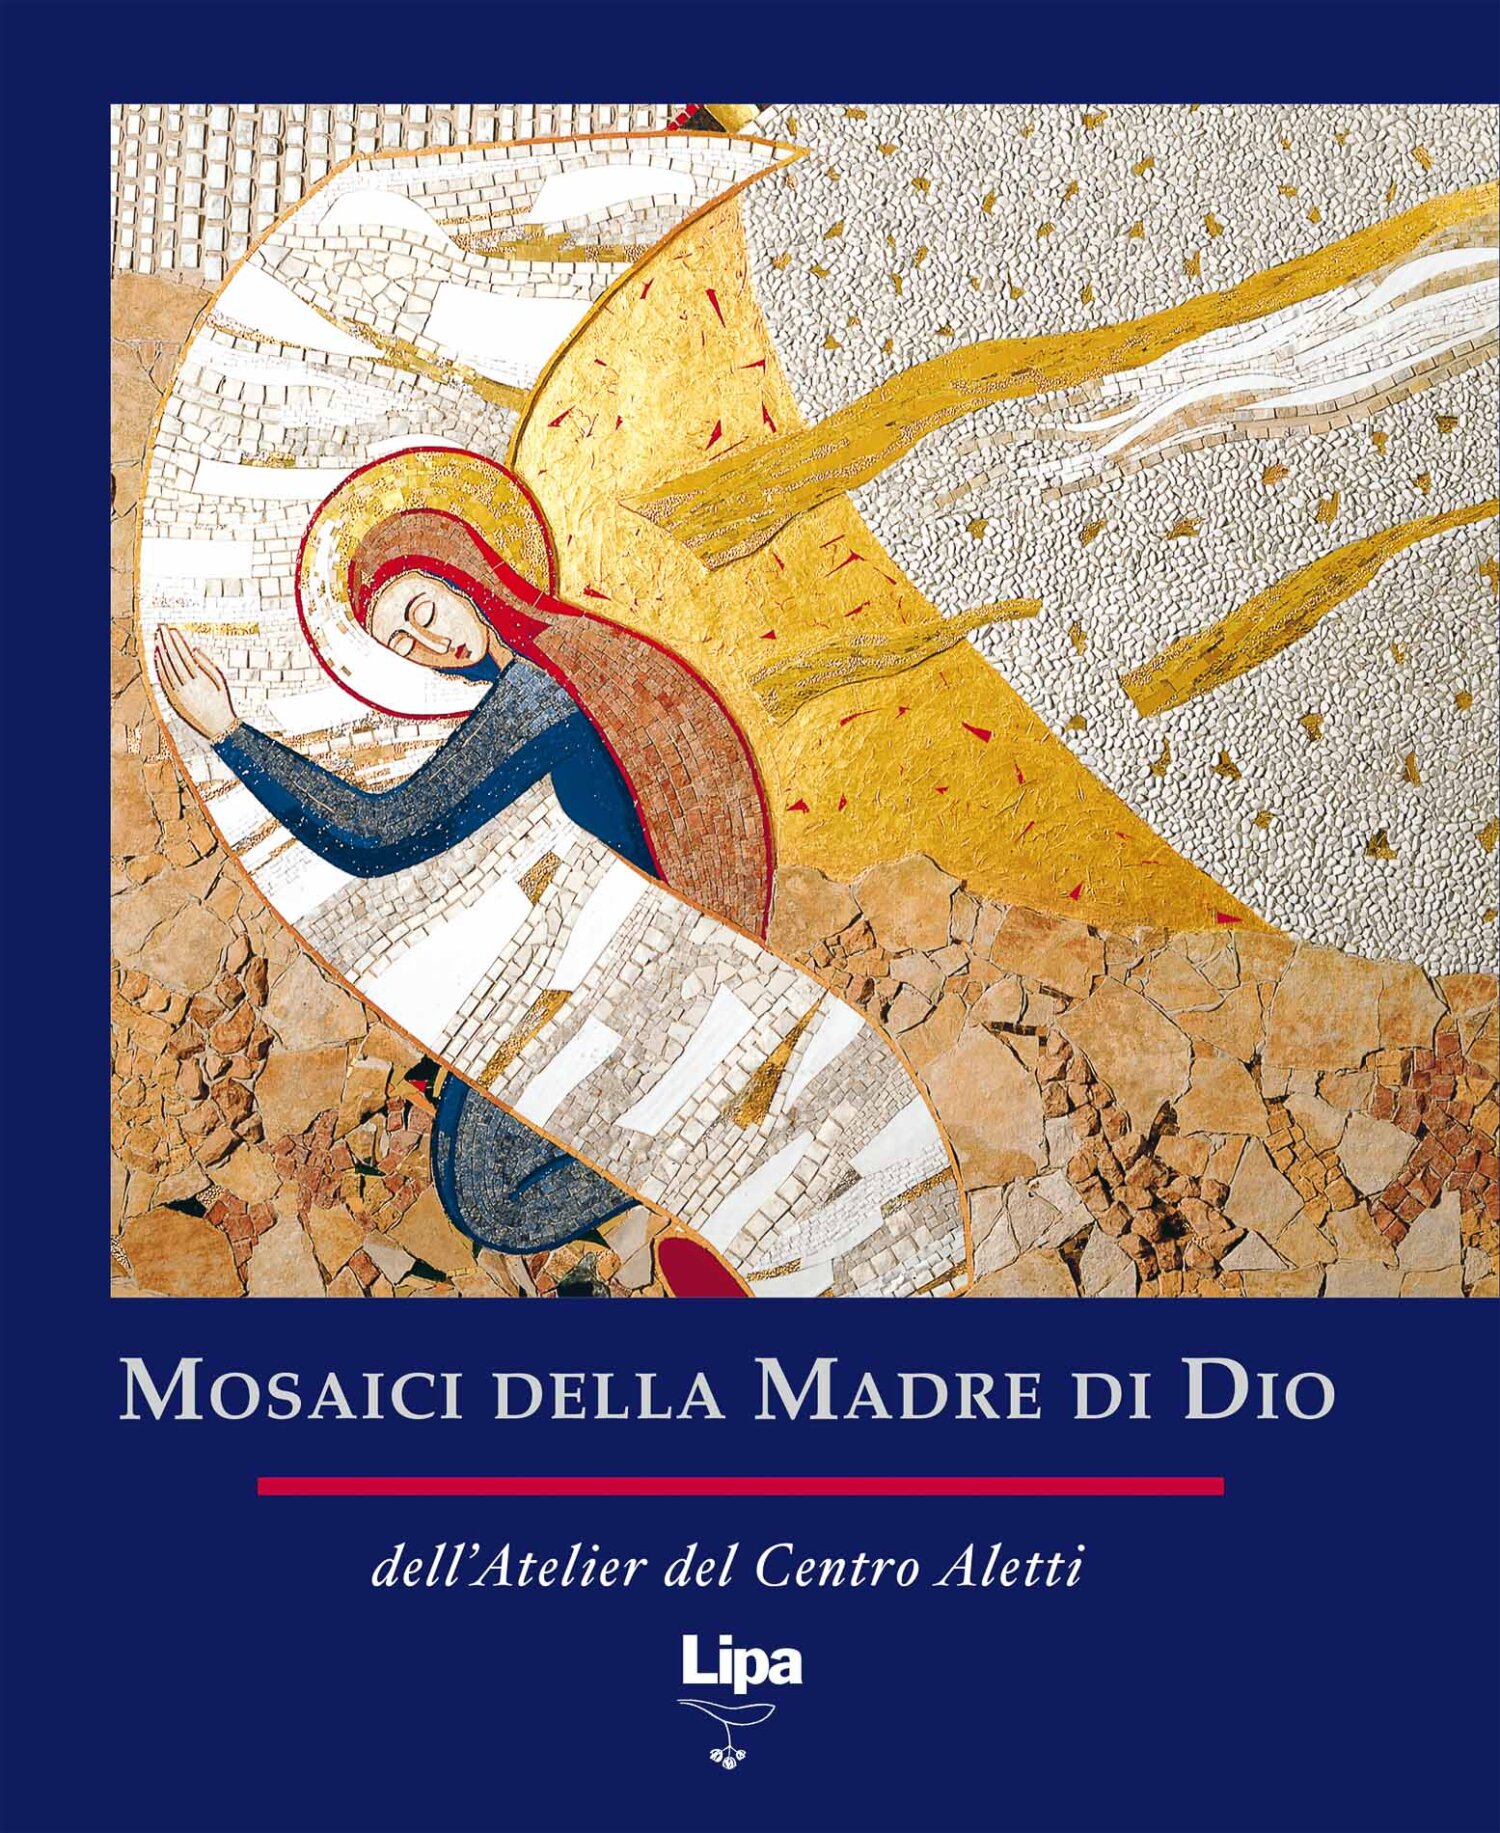 Copertina del libro "Mosaici della Madre di Dio"